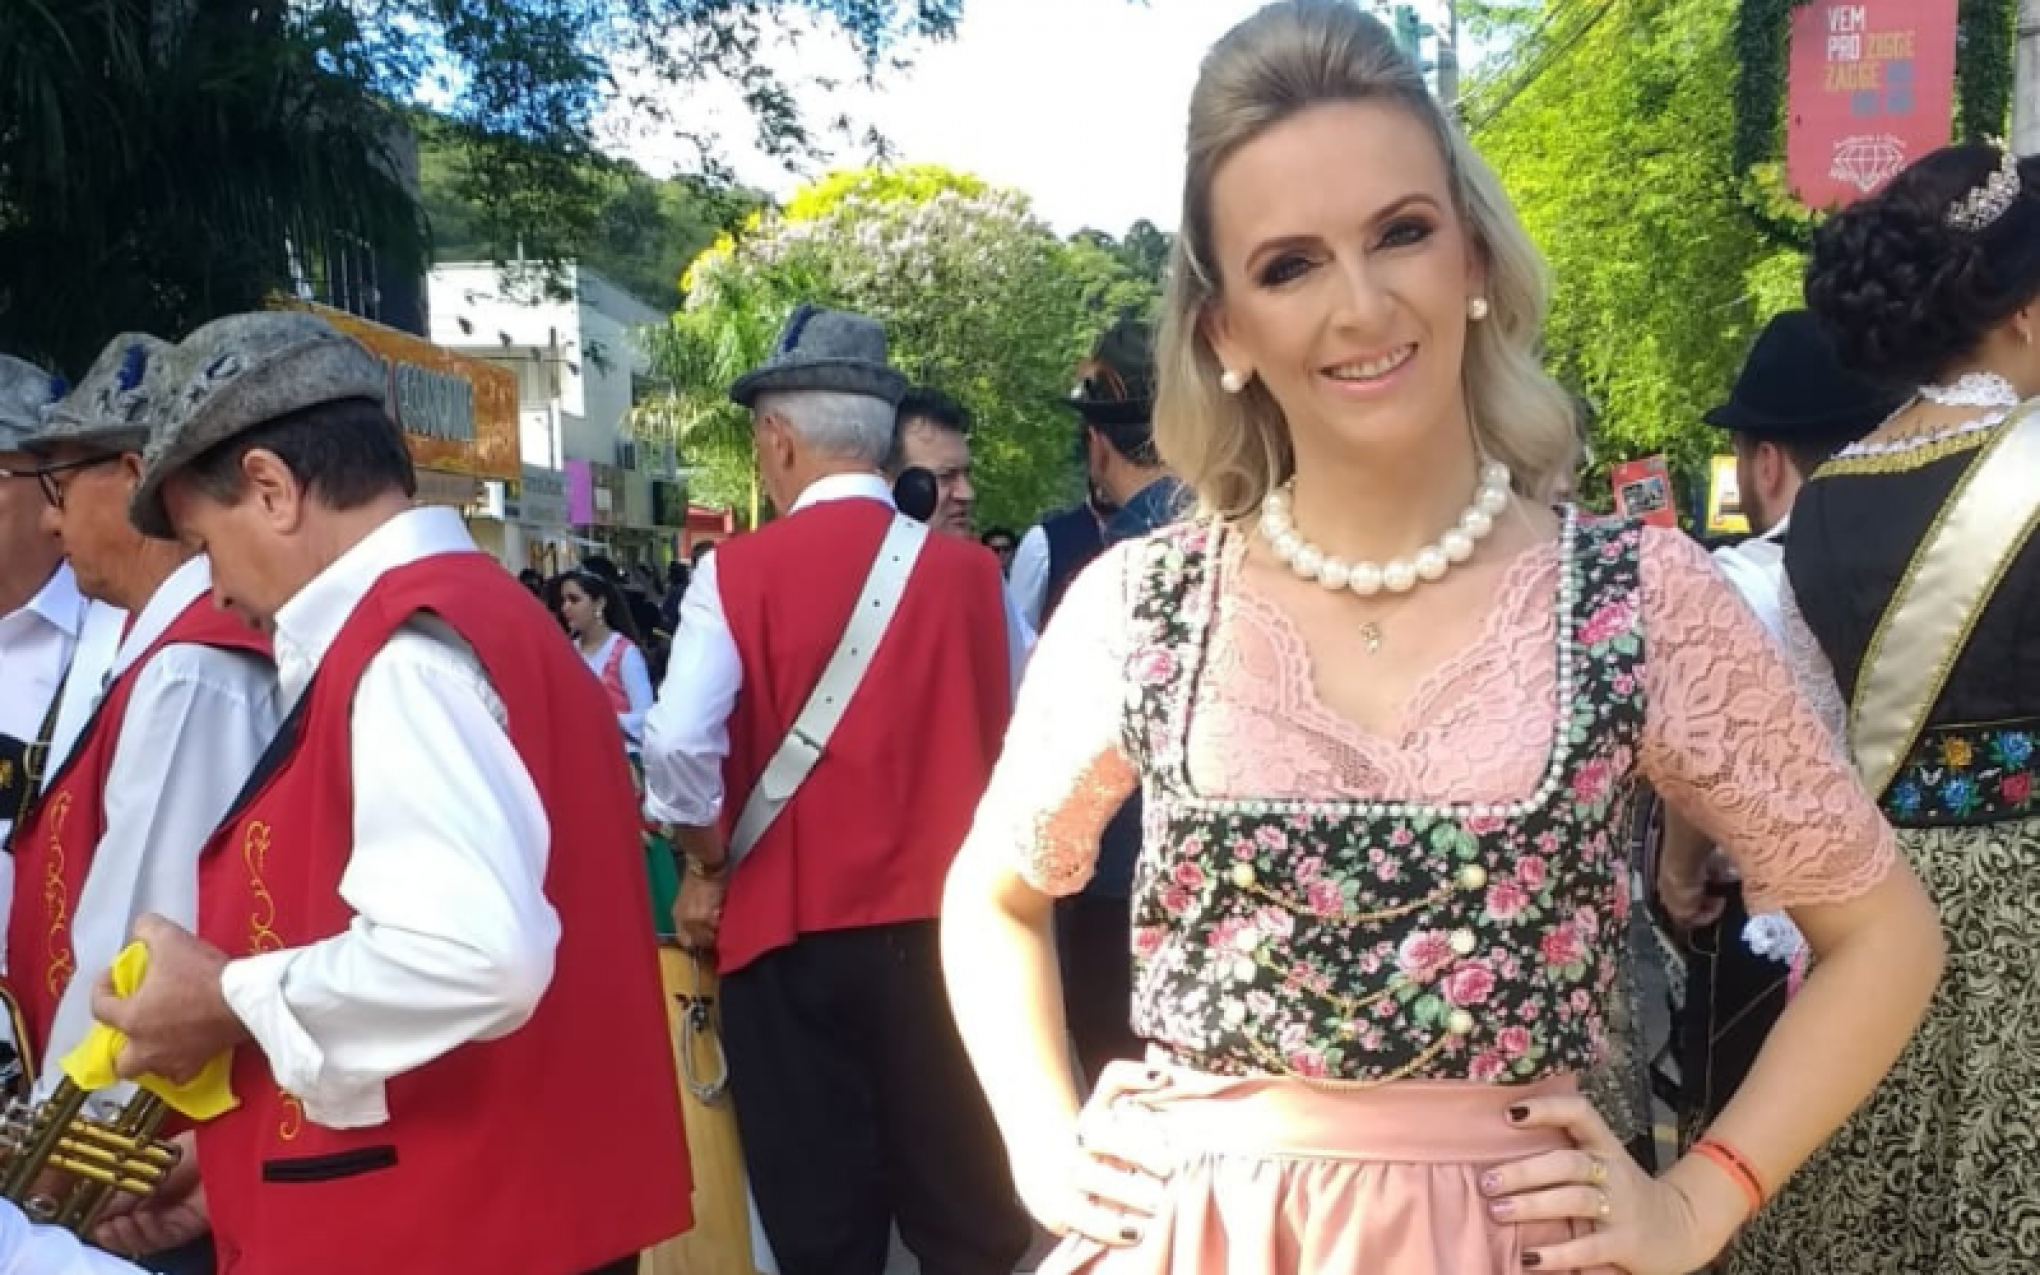 Clube alemão lança camisa em homenagem a Oktoberfest